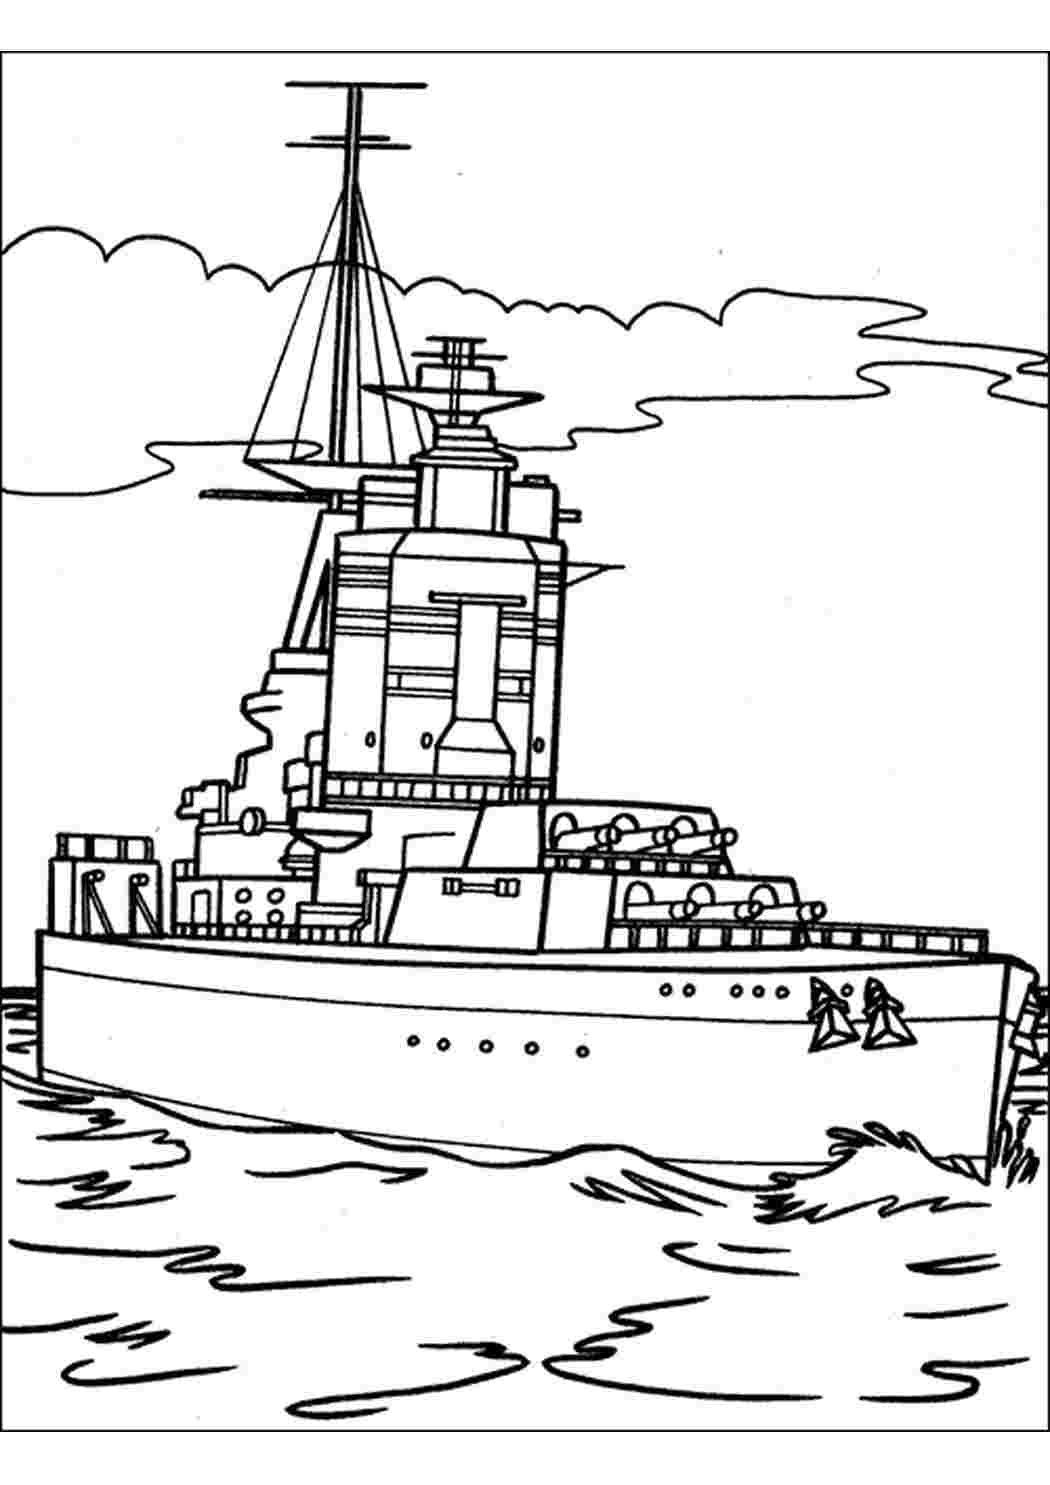 Раскраски военный корабль, раскраска для мальчиков Раскраски Корабли 